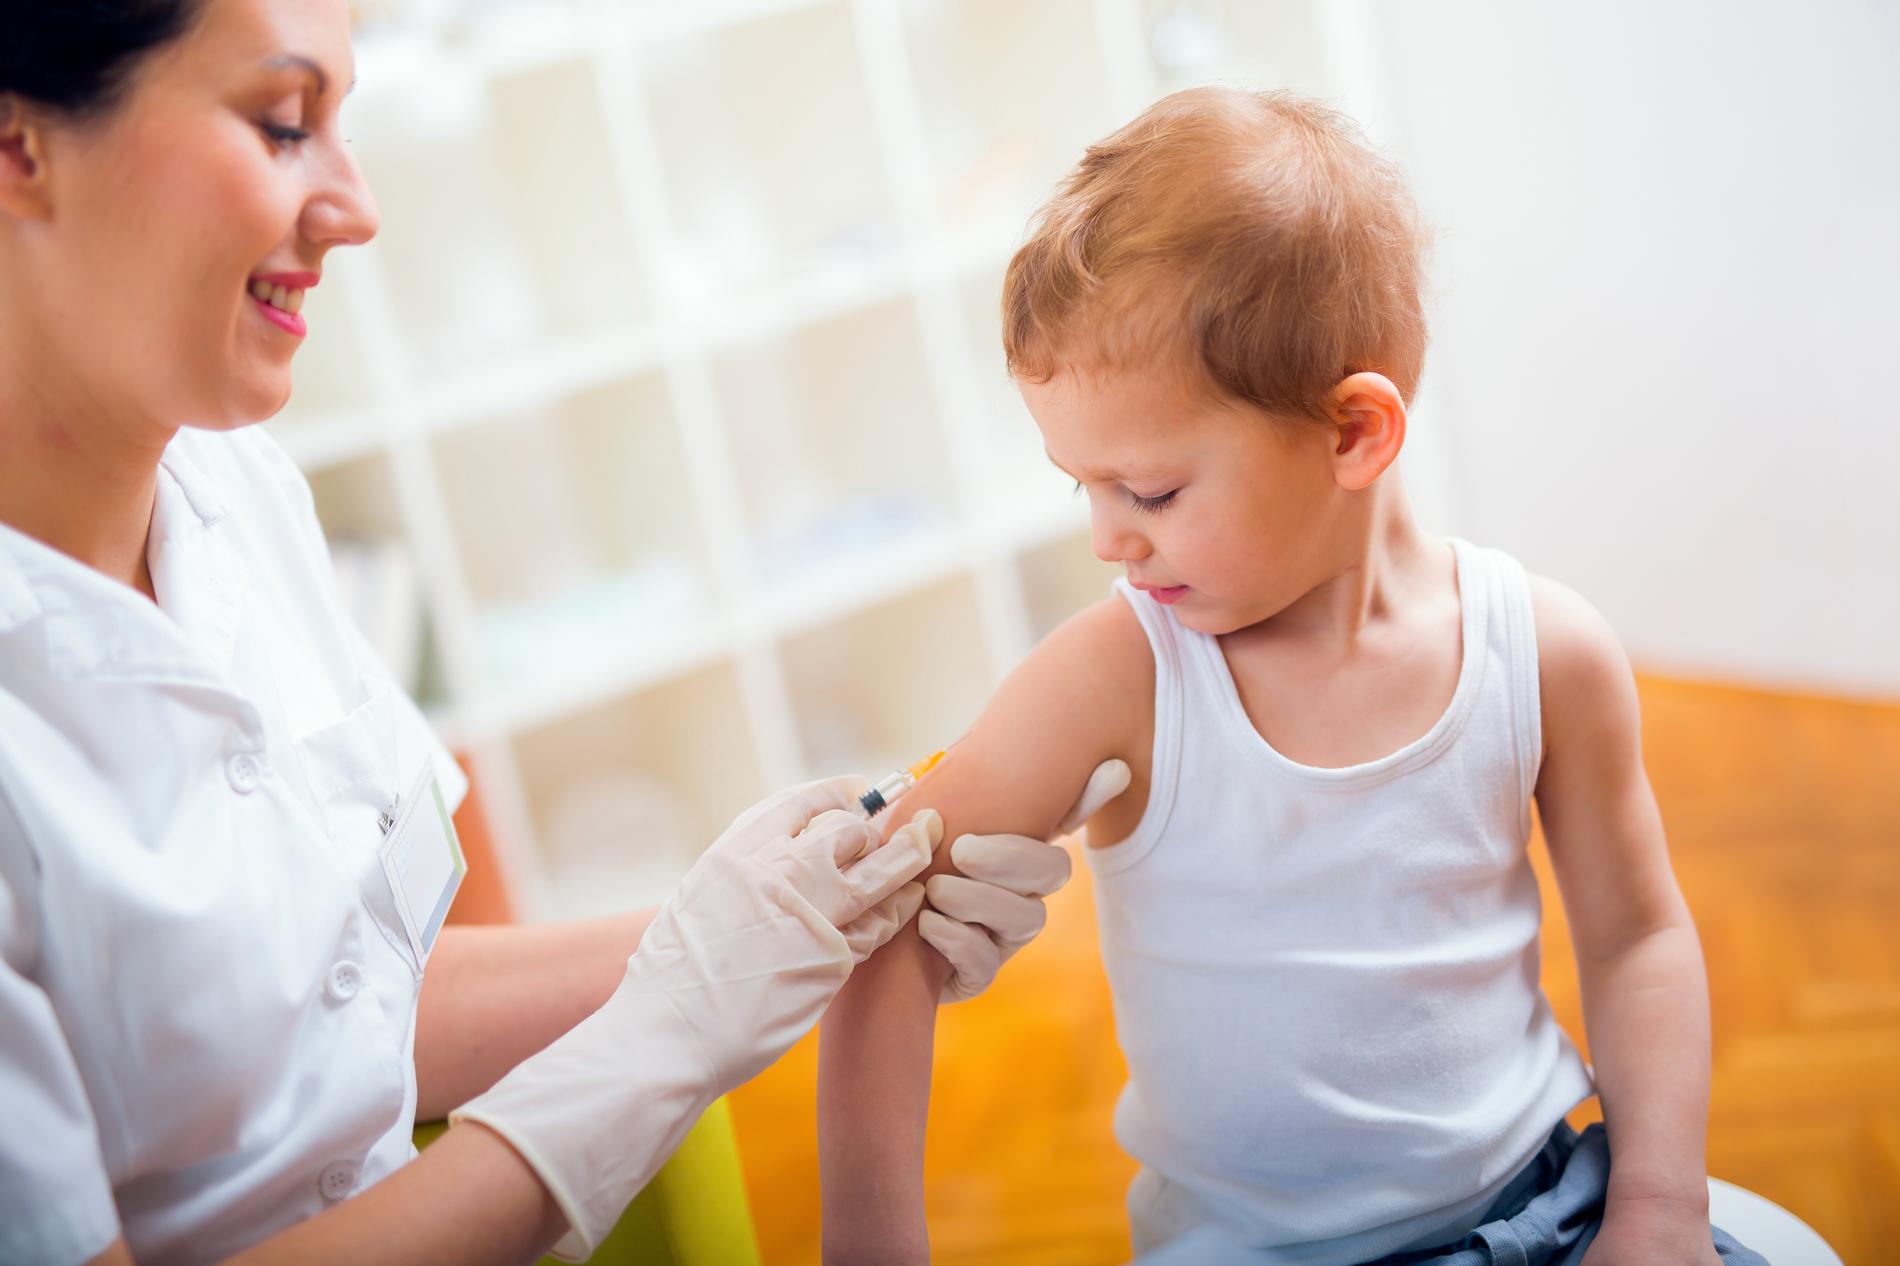 Myt sprids bland föräldrar. Allt fler tvekar att vaccinera sina barn.